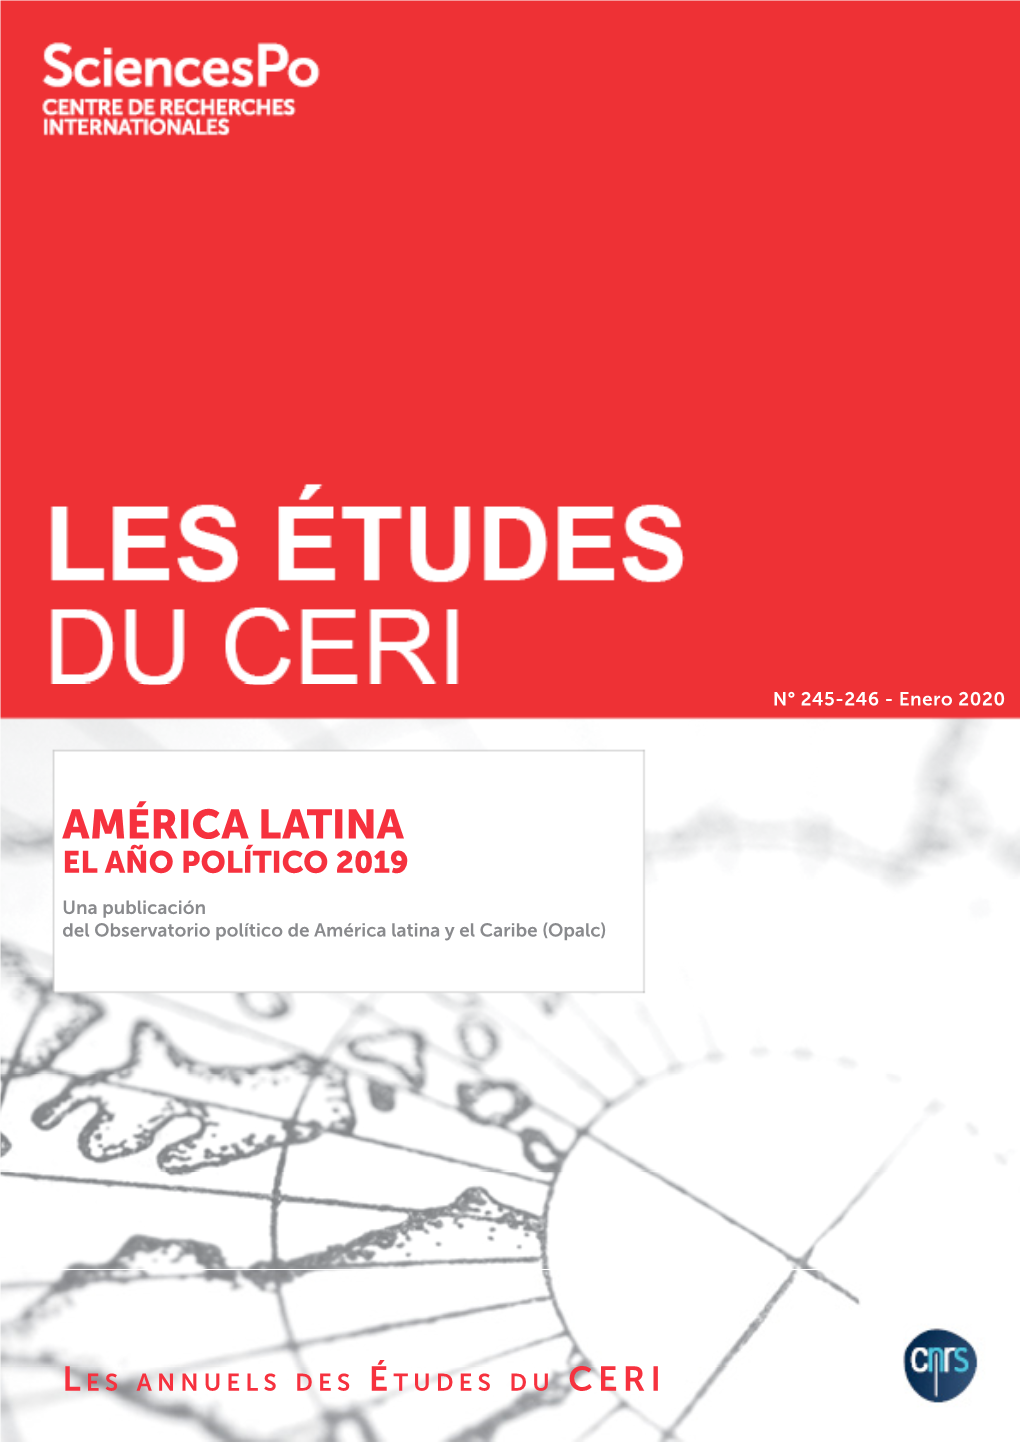 América Latina El Año Político 2019